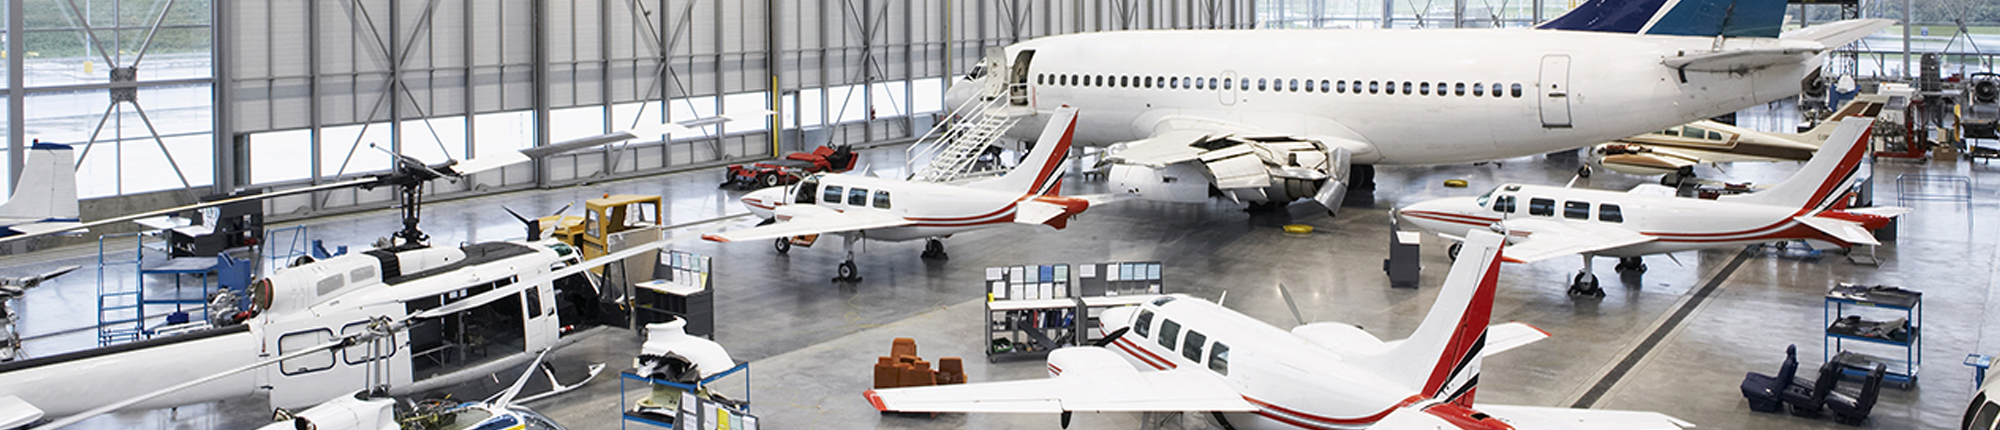 Hangar with various size aircraft